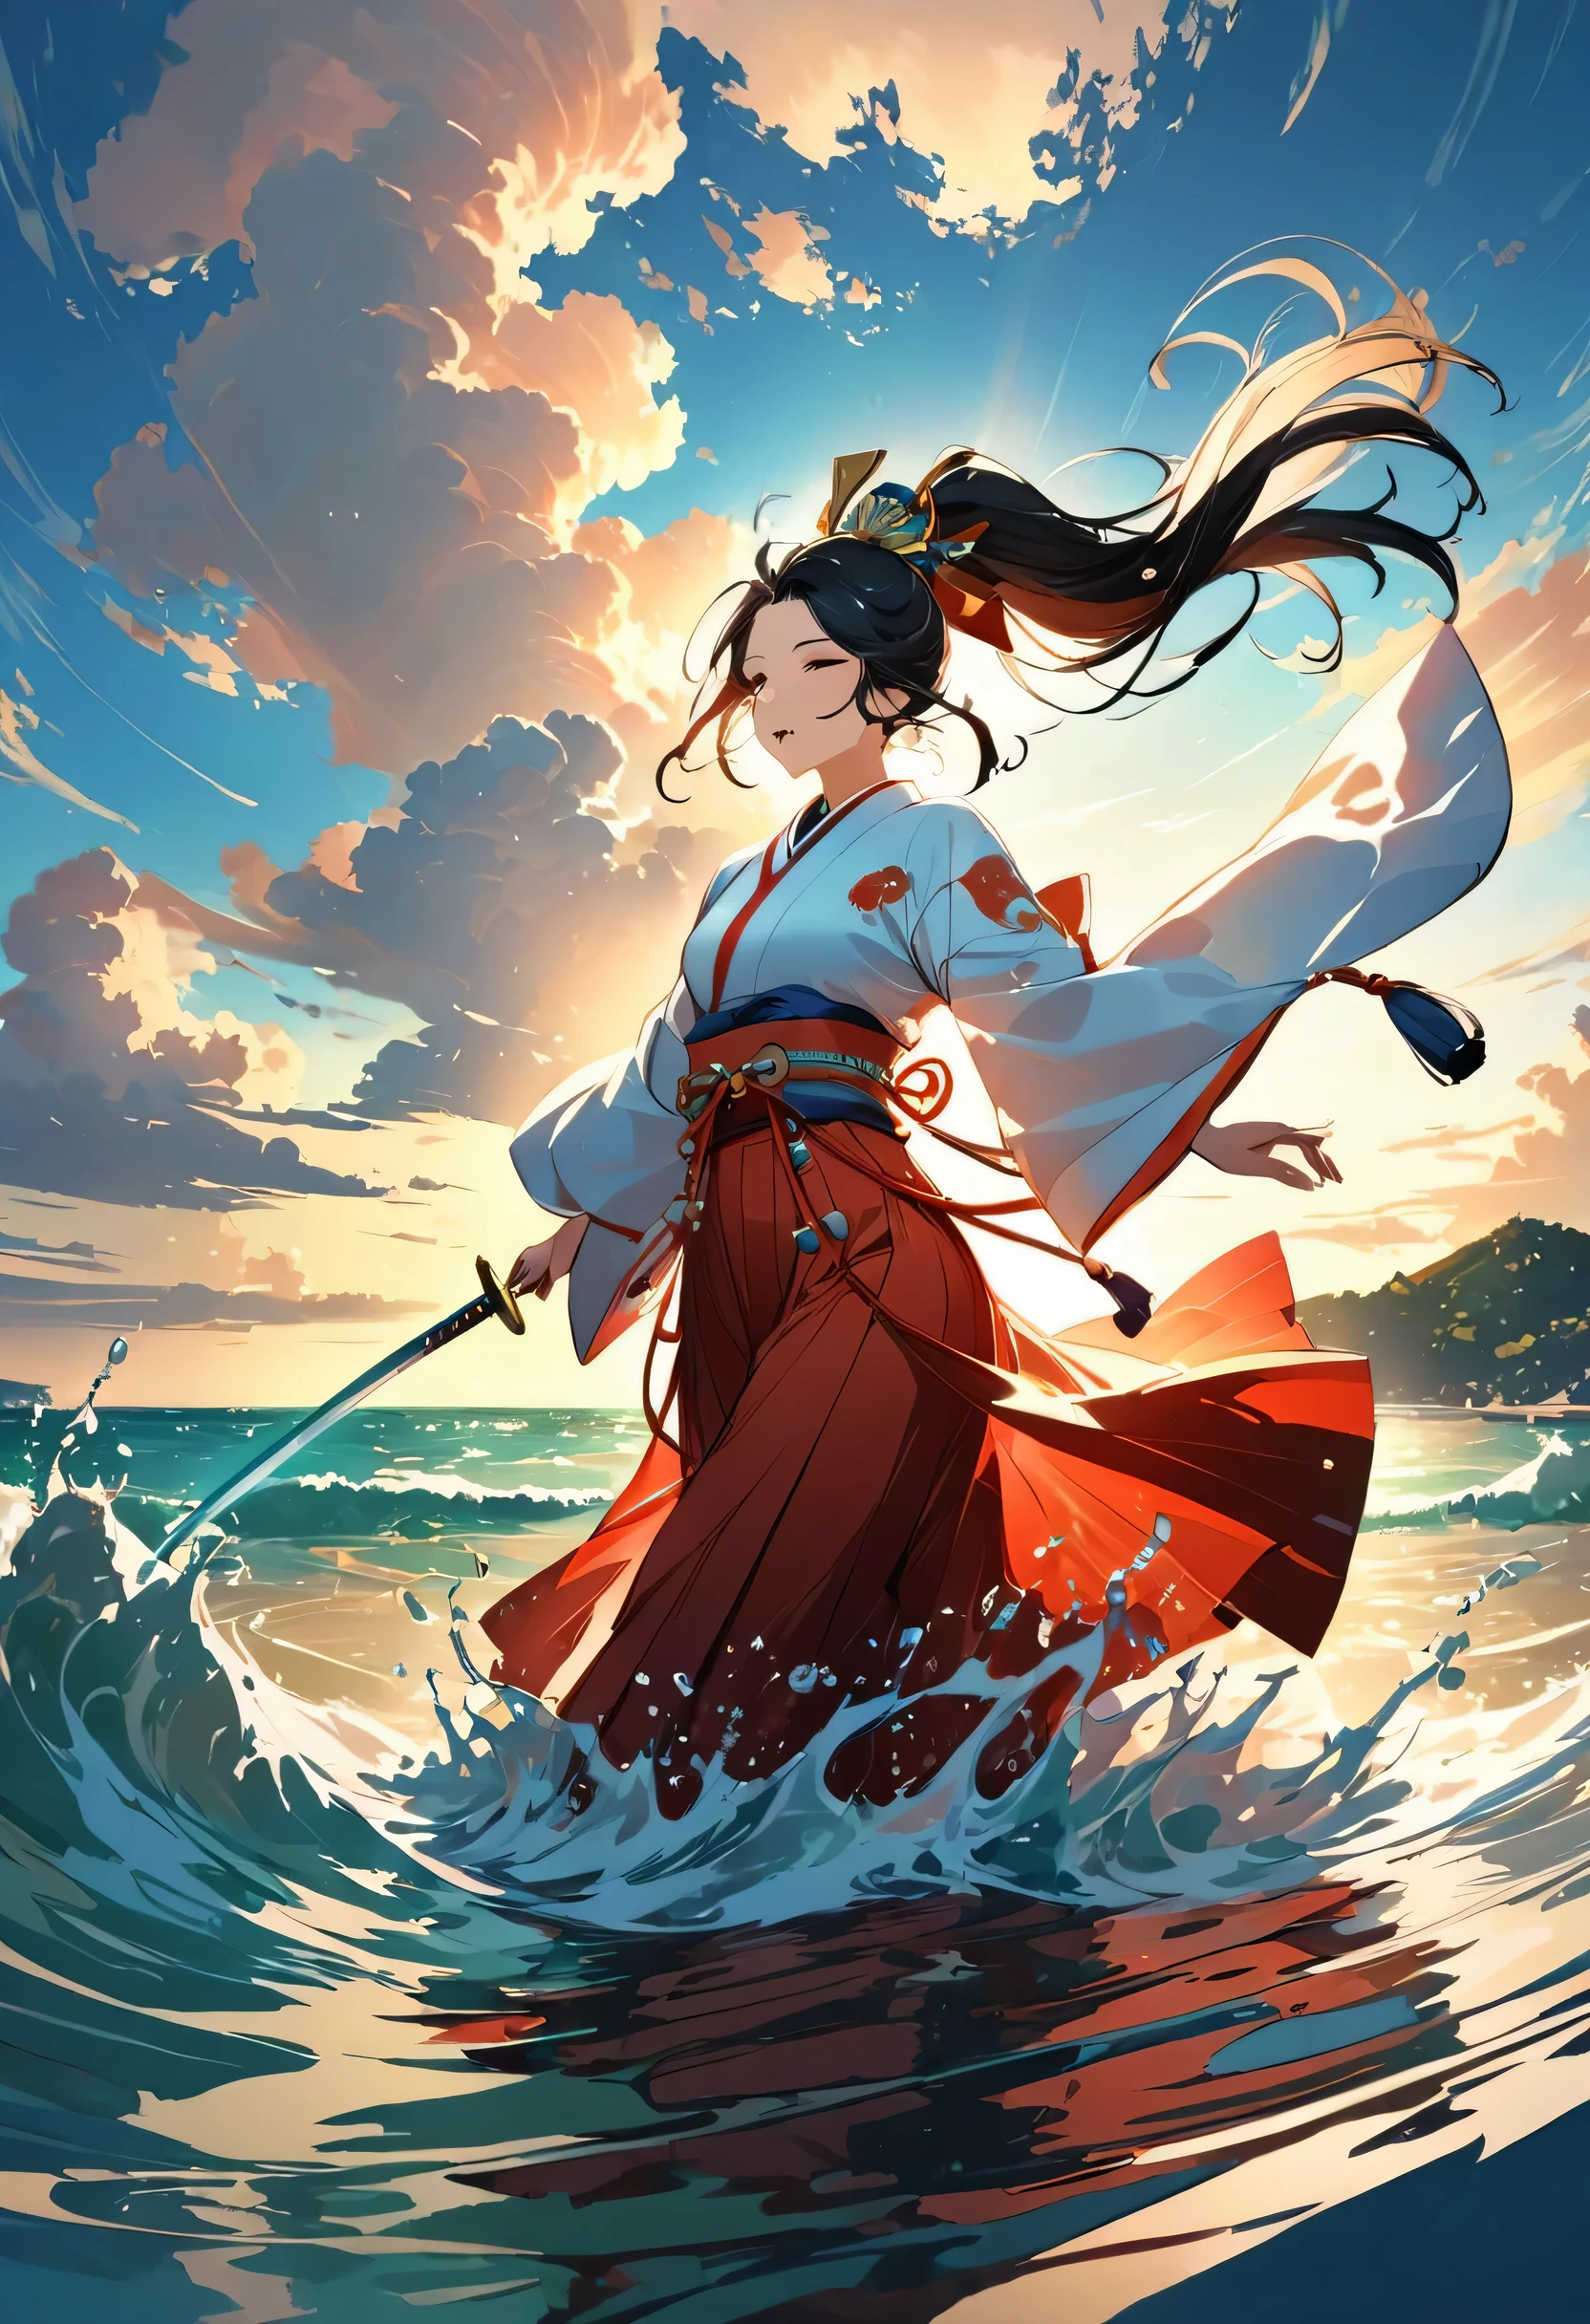 prêtreess dancing in peu profond water:20ème génération:Shirabyoshi de la période Heian,prêtre&#39;vêtements:Kimono blanc et rouge:Rouge aussi,Épée de ceinture:Épée japonaise,queue de cheval,Soyez silencieux,belle lumière et ombre,chef-d&#39;œuvre,最高chef-d&#39;œuvre,éclaboussure d&#39;eau,belle lumière et ombre,le rendu,une scène d&#39;un film,fond de mer,Beau paysage,Un beau ciel s&#39;étend,horizon,danser à la surface de la mer,éclaboussure d&#39;eauが舞う,couleurs riches,couleurs vives,beauté,sacré,éclair,Anatomiquement correct,fantaisie,peu profond,danse dédiée à Dieu